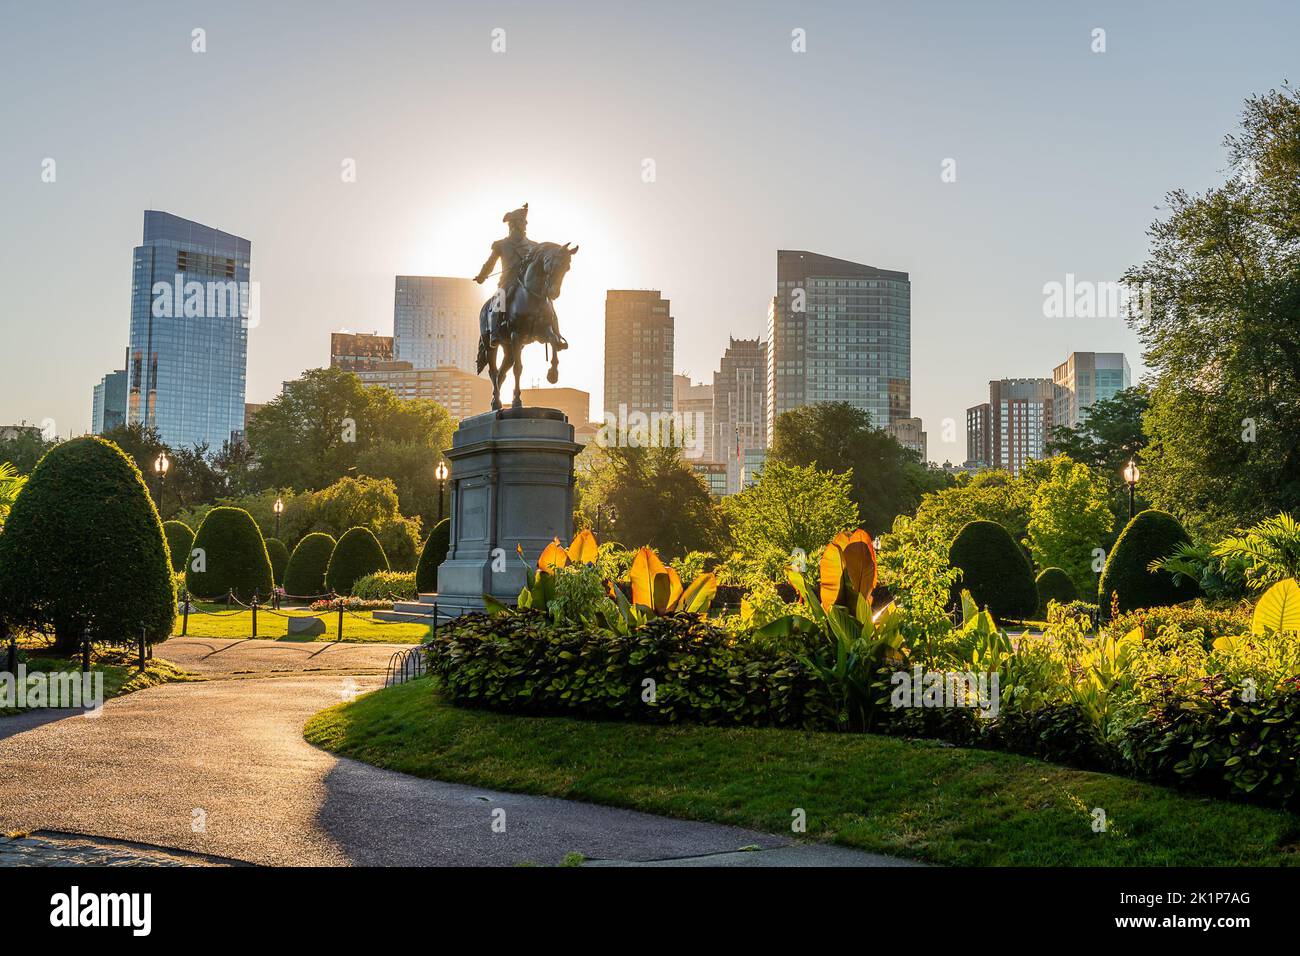 Boston, Massachusetts Stock Photo